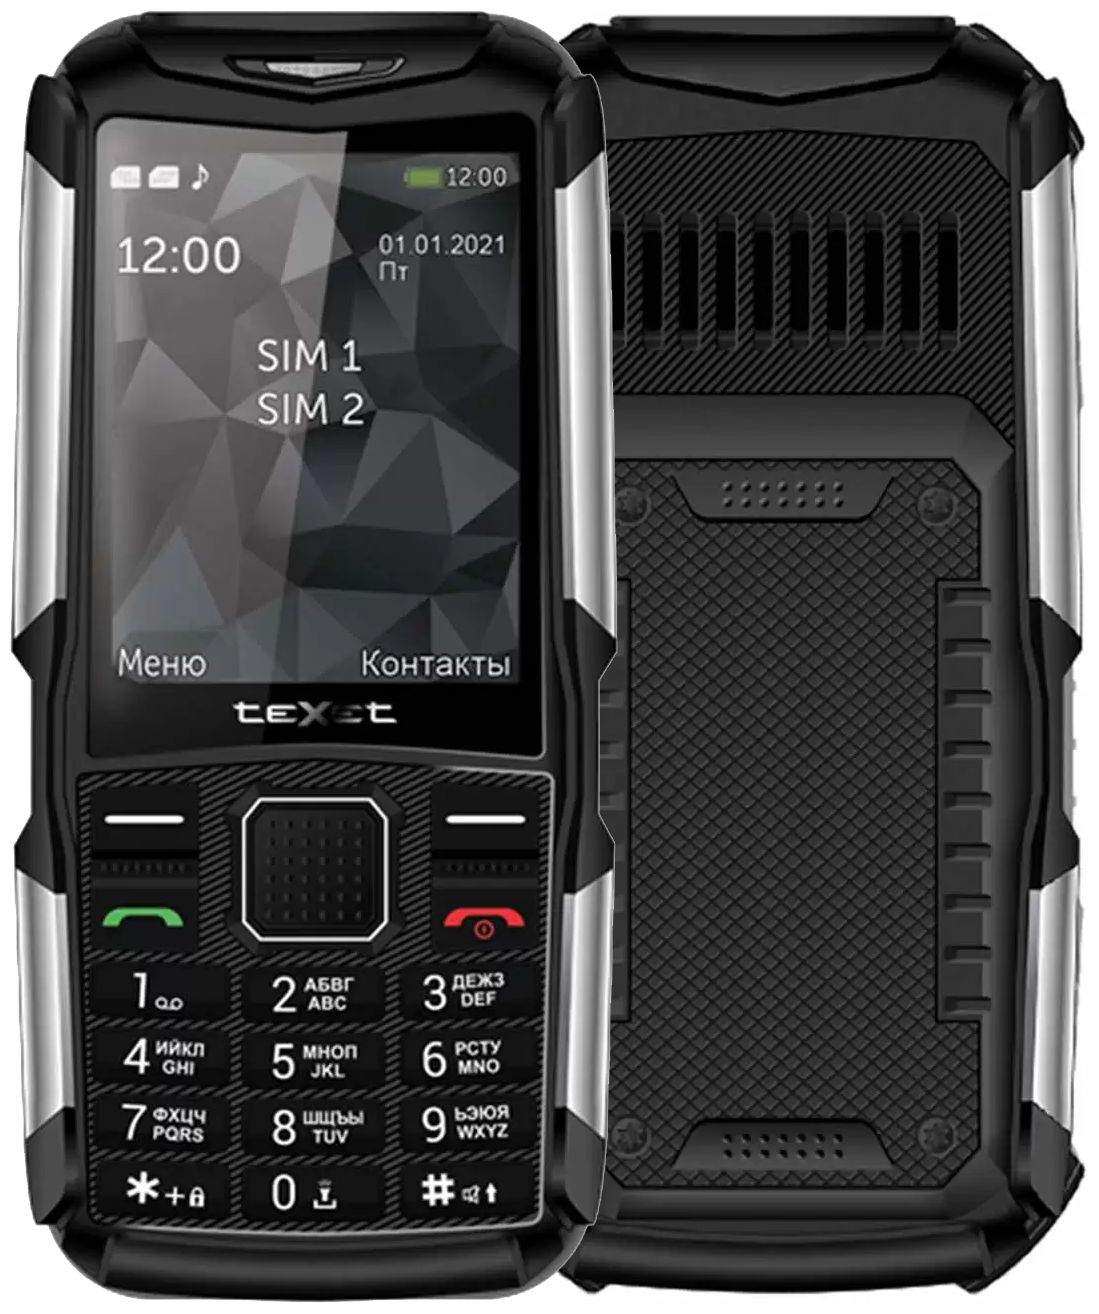 Мобильный телефон teXet TM-D314 Black мобильный телефон texet tm 521r black orange